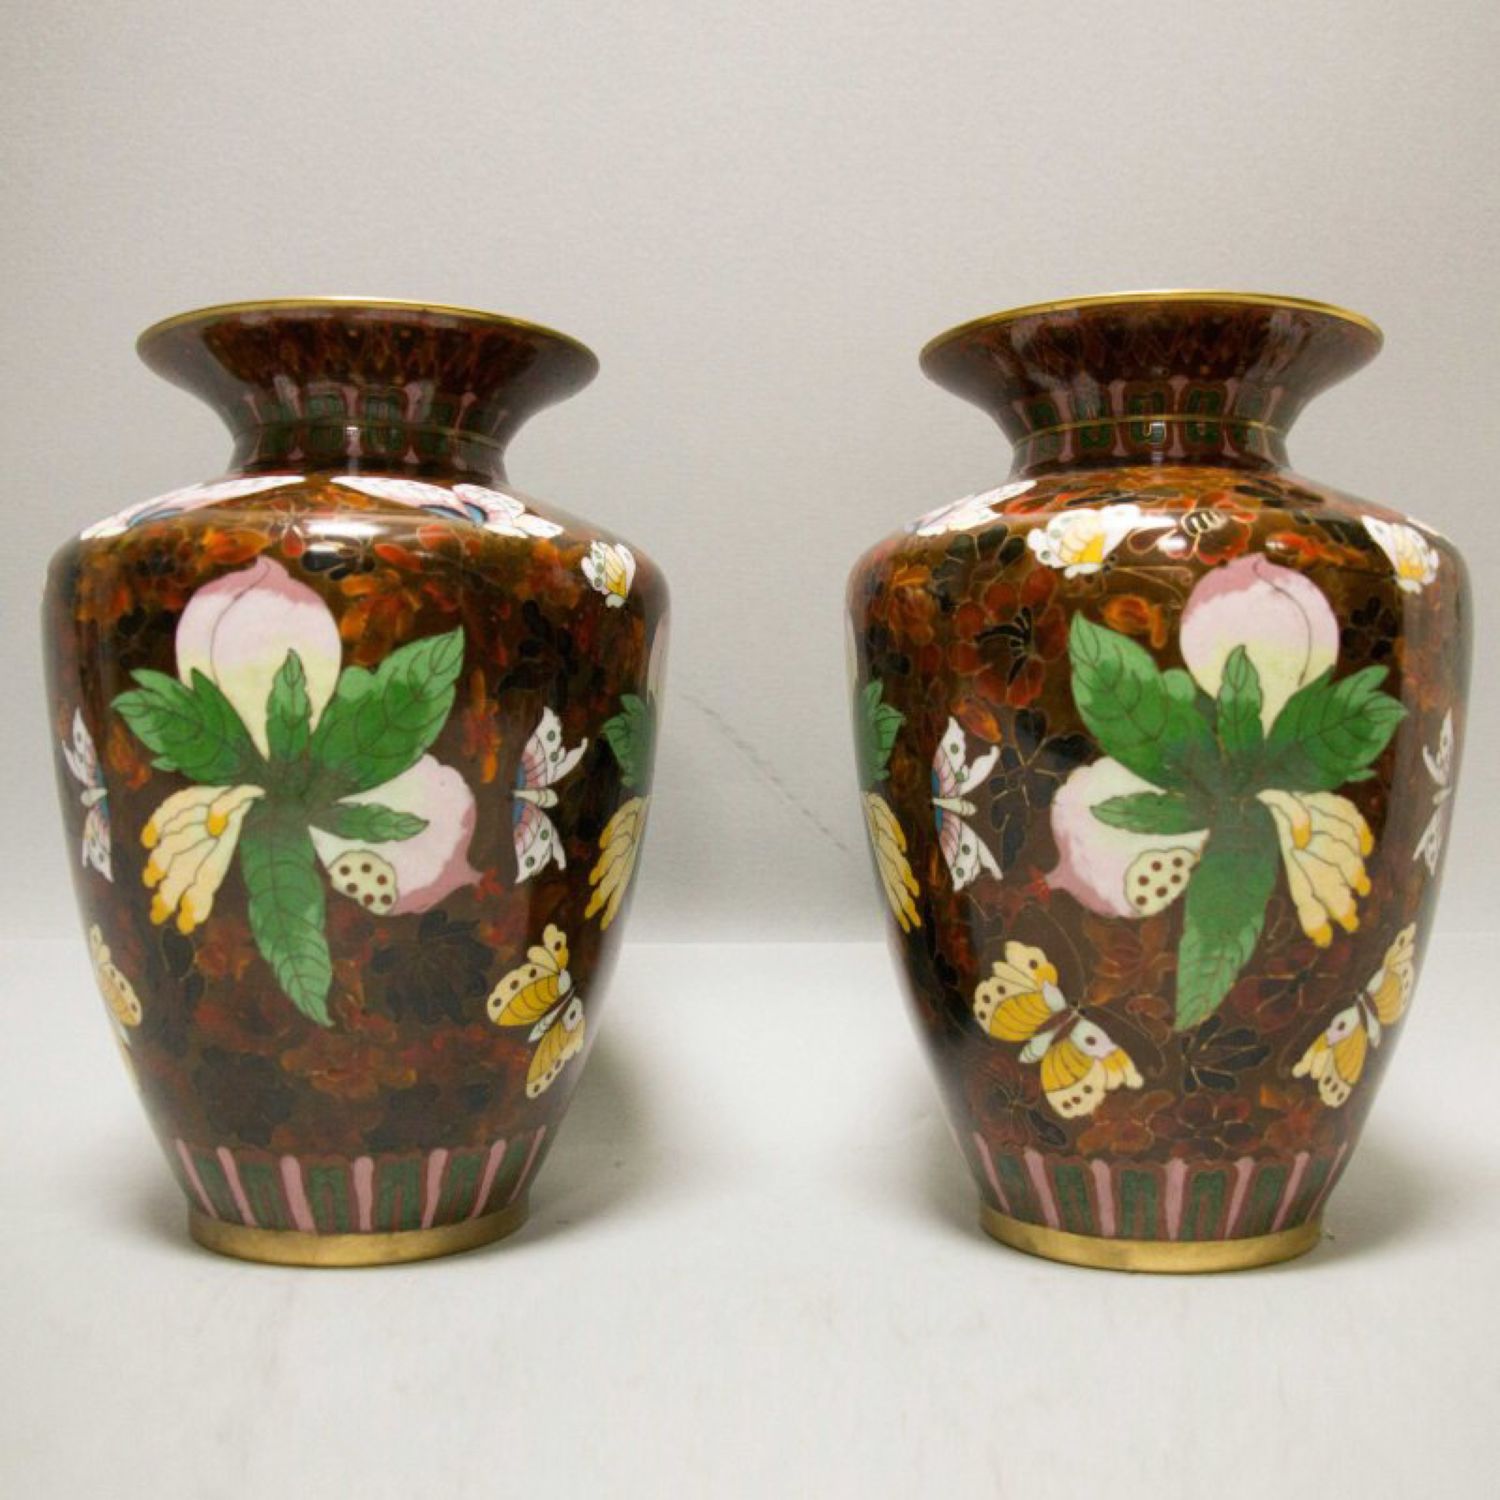 Китайские вазы / Chinese vases